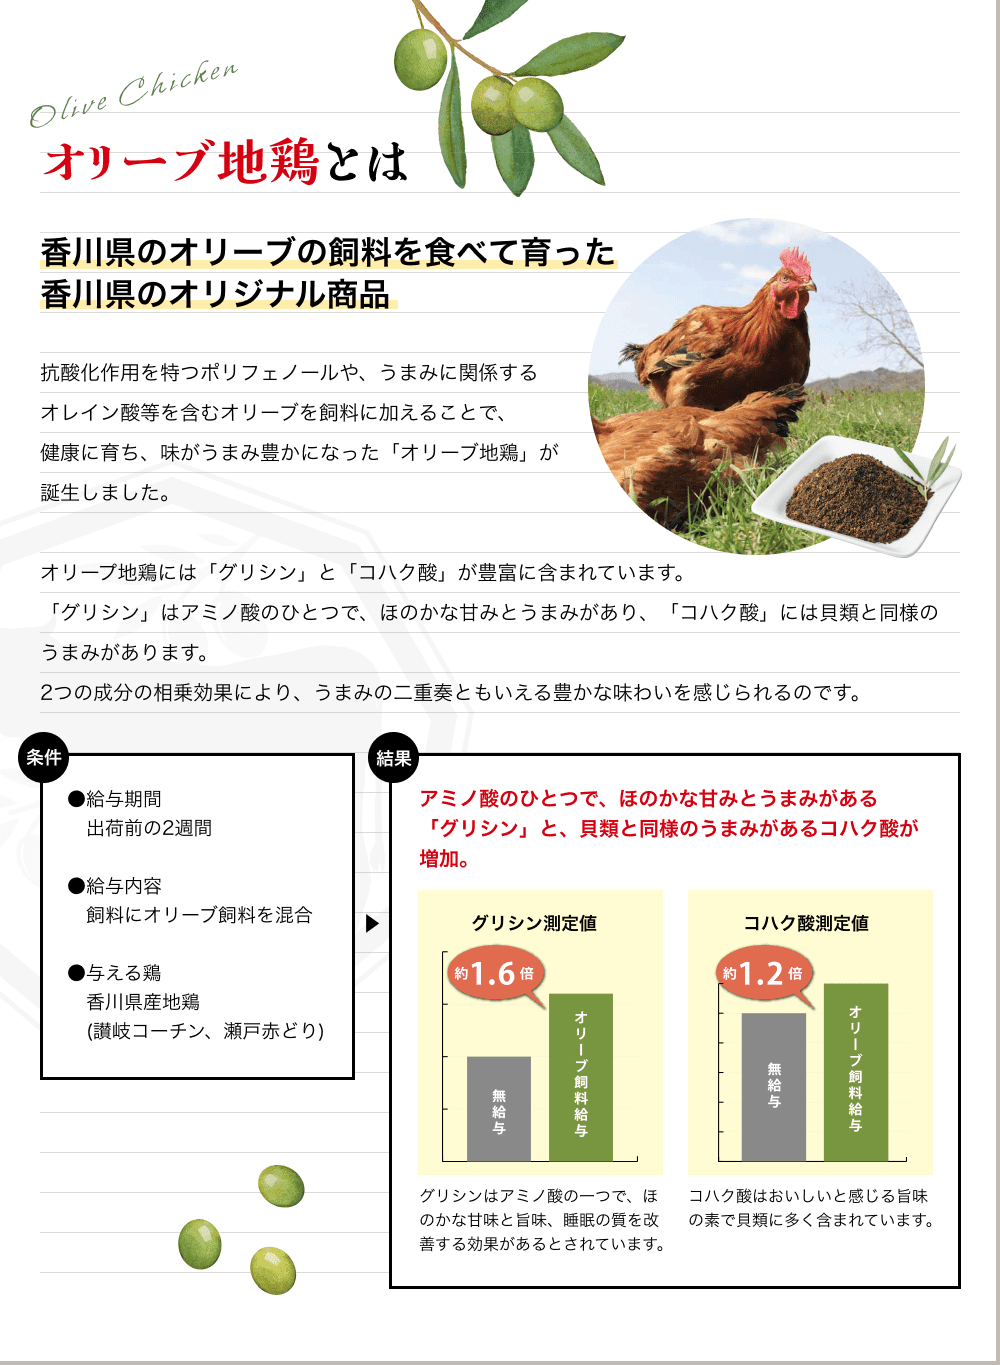 オリーブ地鶏とは 香川県のオリーブの飼料を食べて育った香川県のオリジナル商品 抗酸化作用を特つポリフェノールや、うまみに関係するオレイン酸等を含むオリーブを飼料に加えることで、健康に育ち、味がうまみ豊かになった「オリーブ地鶏」が誕生しました。オリープ地鶏には「グリシン」と「コハク酸」が豊富に含まれています。「グリシン」はアミノ酸のひとつで、ほのかな甘みとうまみがあり、「コハク酸」には貝類と同様のうまみがあります。2つの成分の相乗効果により、うまみの二重奏ともいえる豊かな味わいを感じられるのです。 